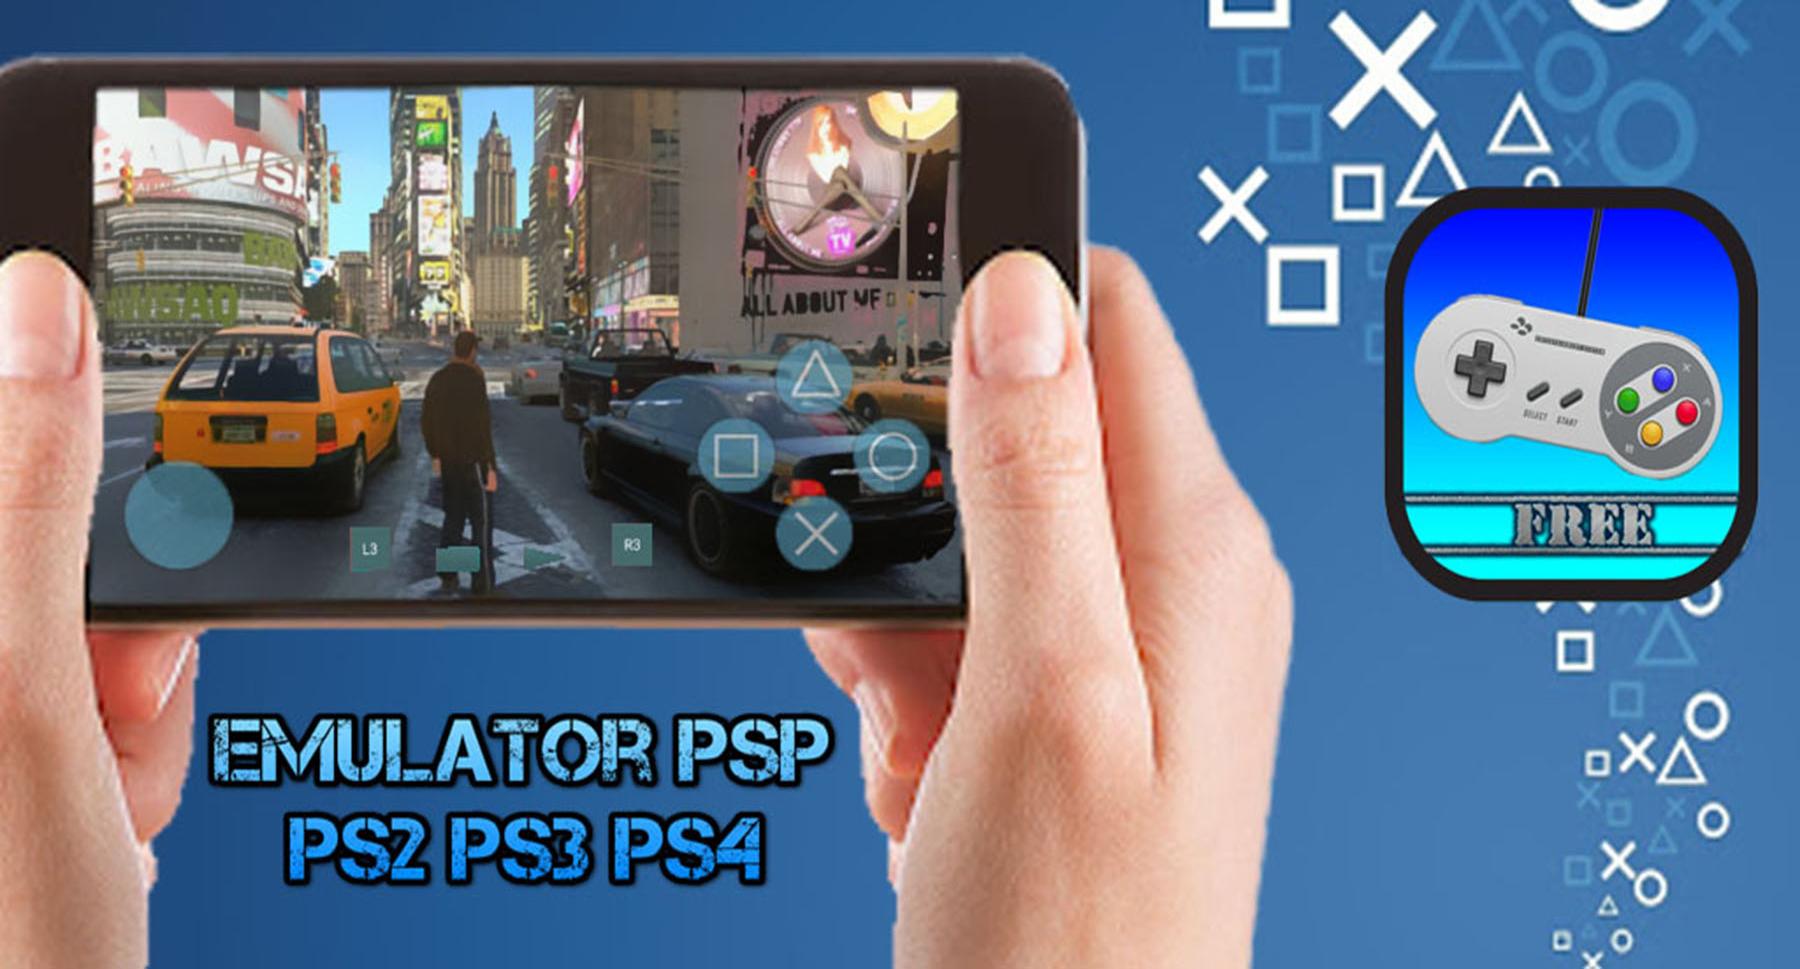 Postbode verlangen Fascinerend TÉLÉCHARGER ET JOUER: Emulateur PSP PS2 PS3 PS4 APK pour Android Télécharger